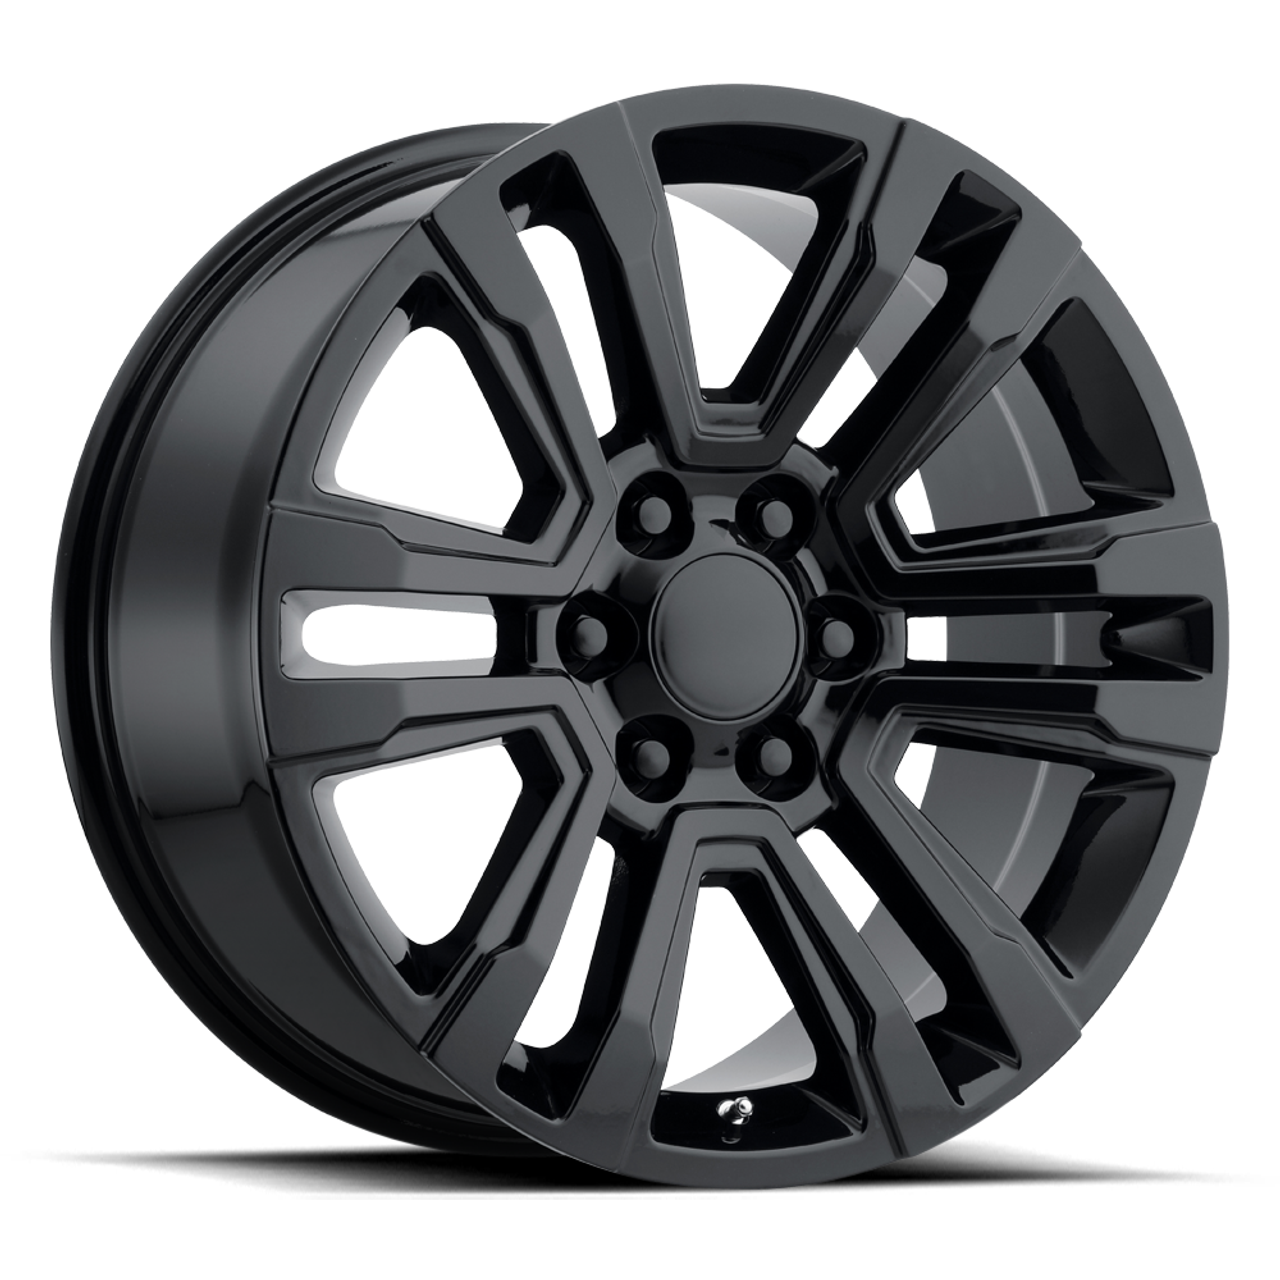 Set 4 Performance Replicas PR182 22x9 6x5.5 Gloss Black Wheels 22" 24mm Rims